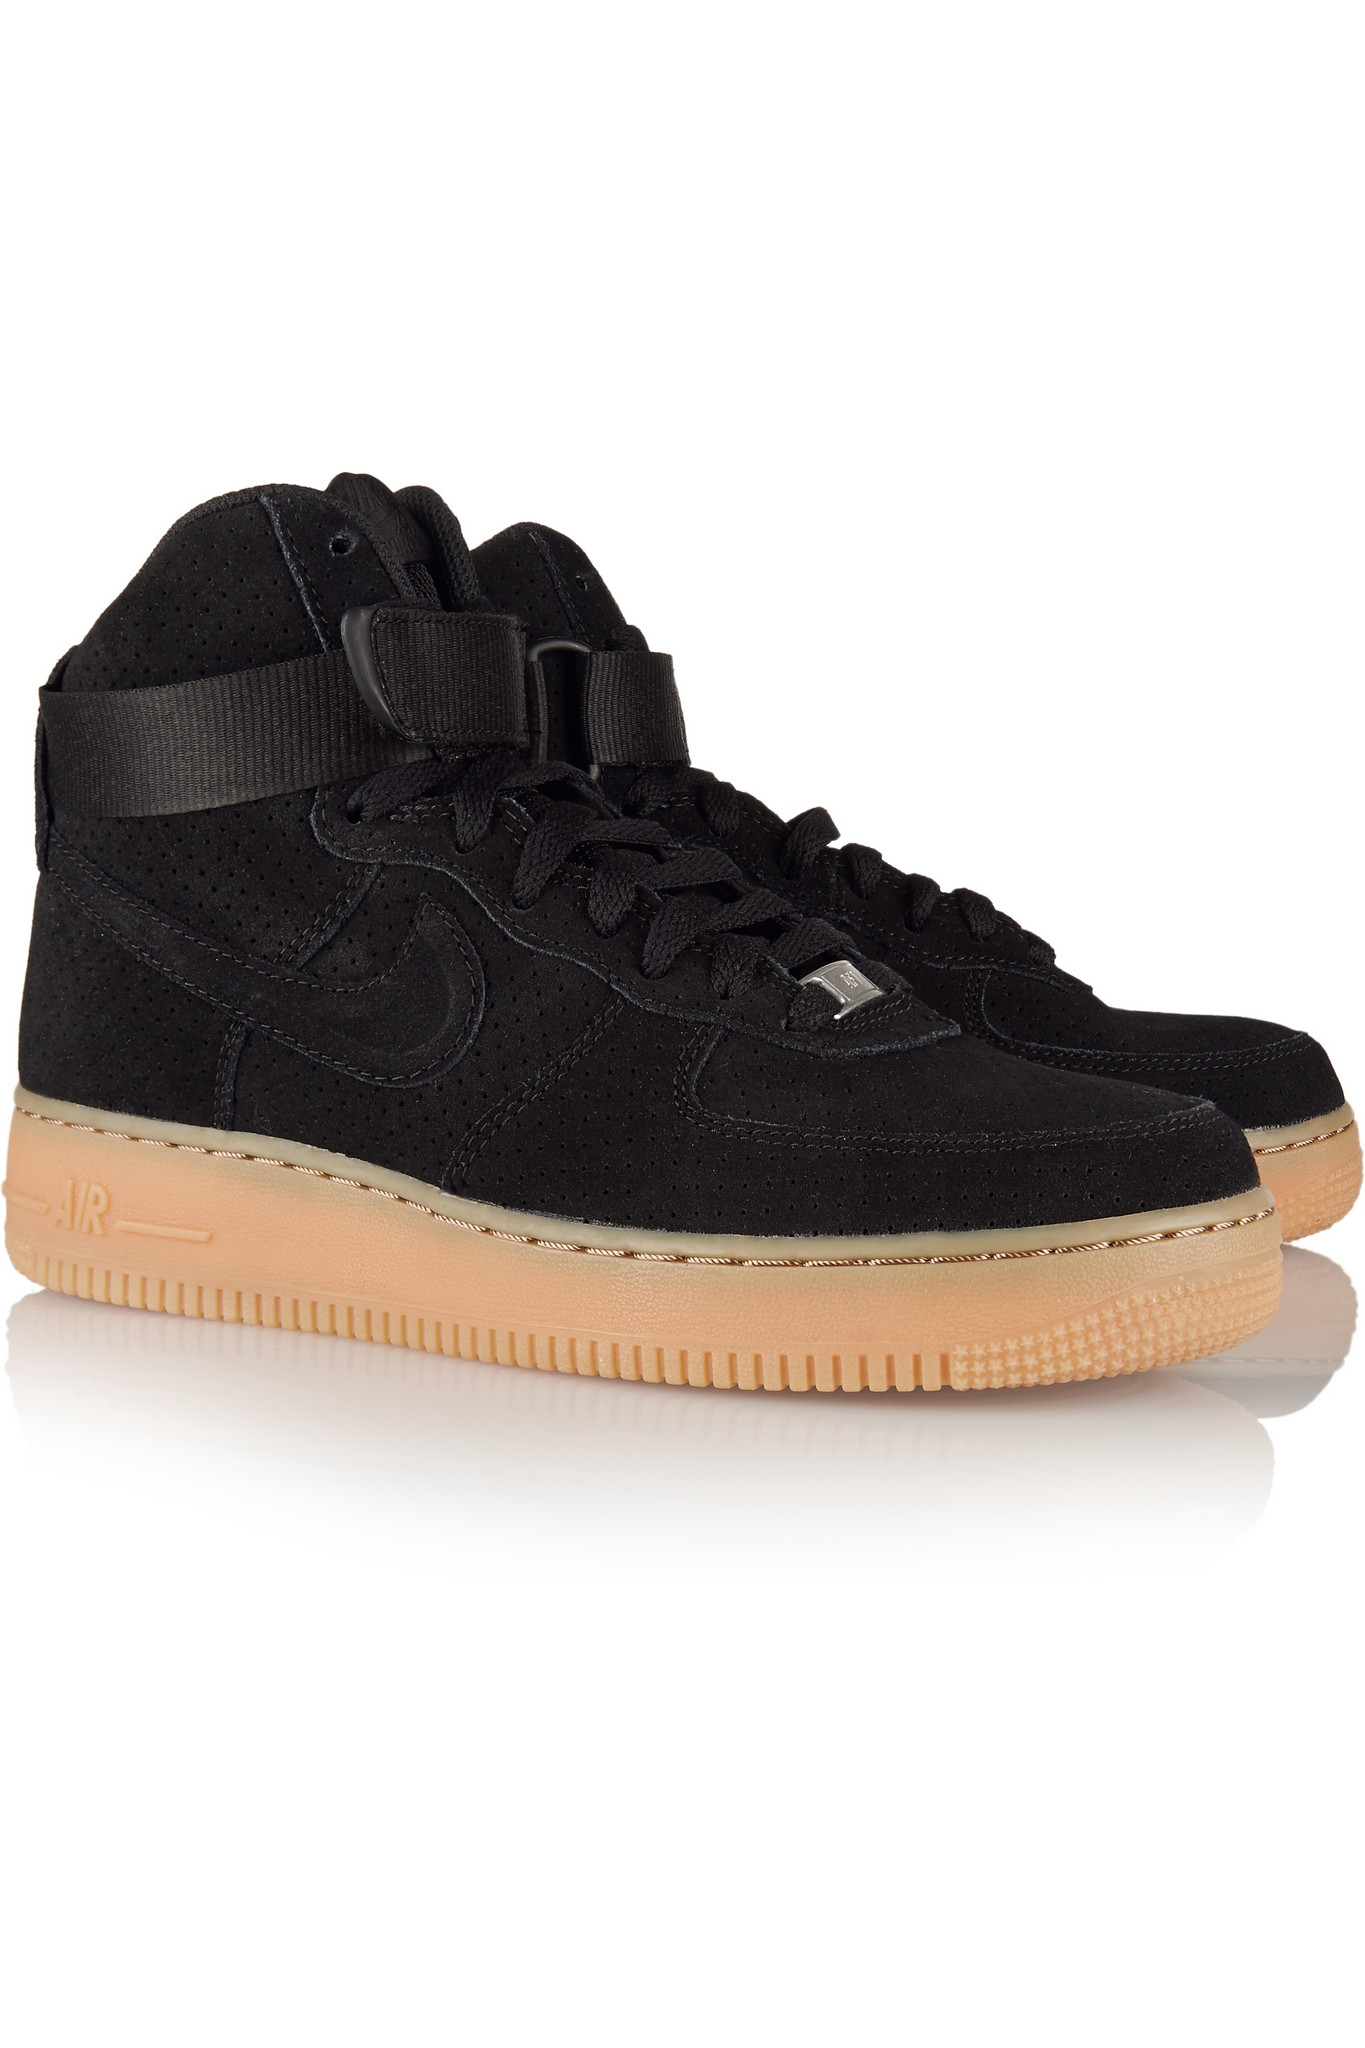 Nike Air Force 1 Hi Suede Sneakers in Black - Lyst